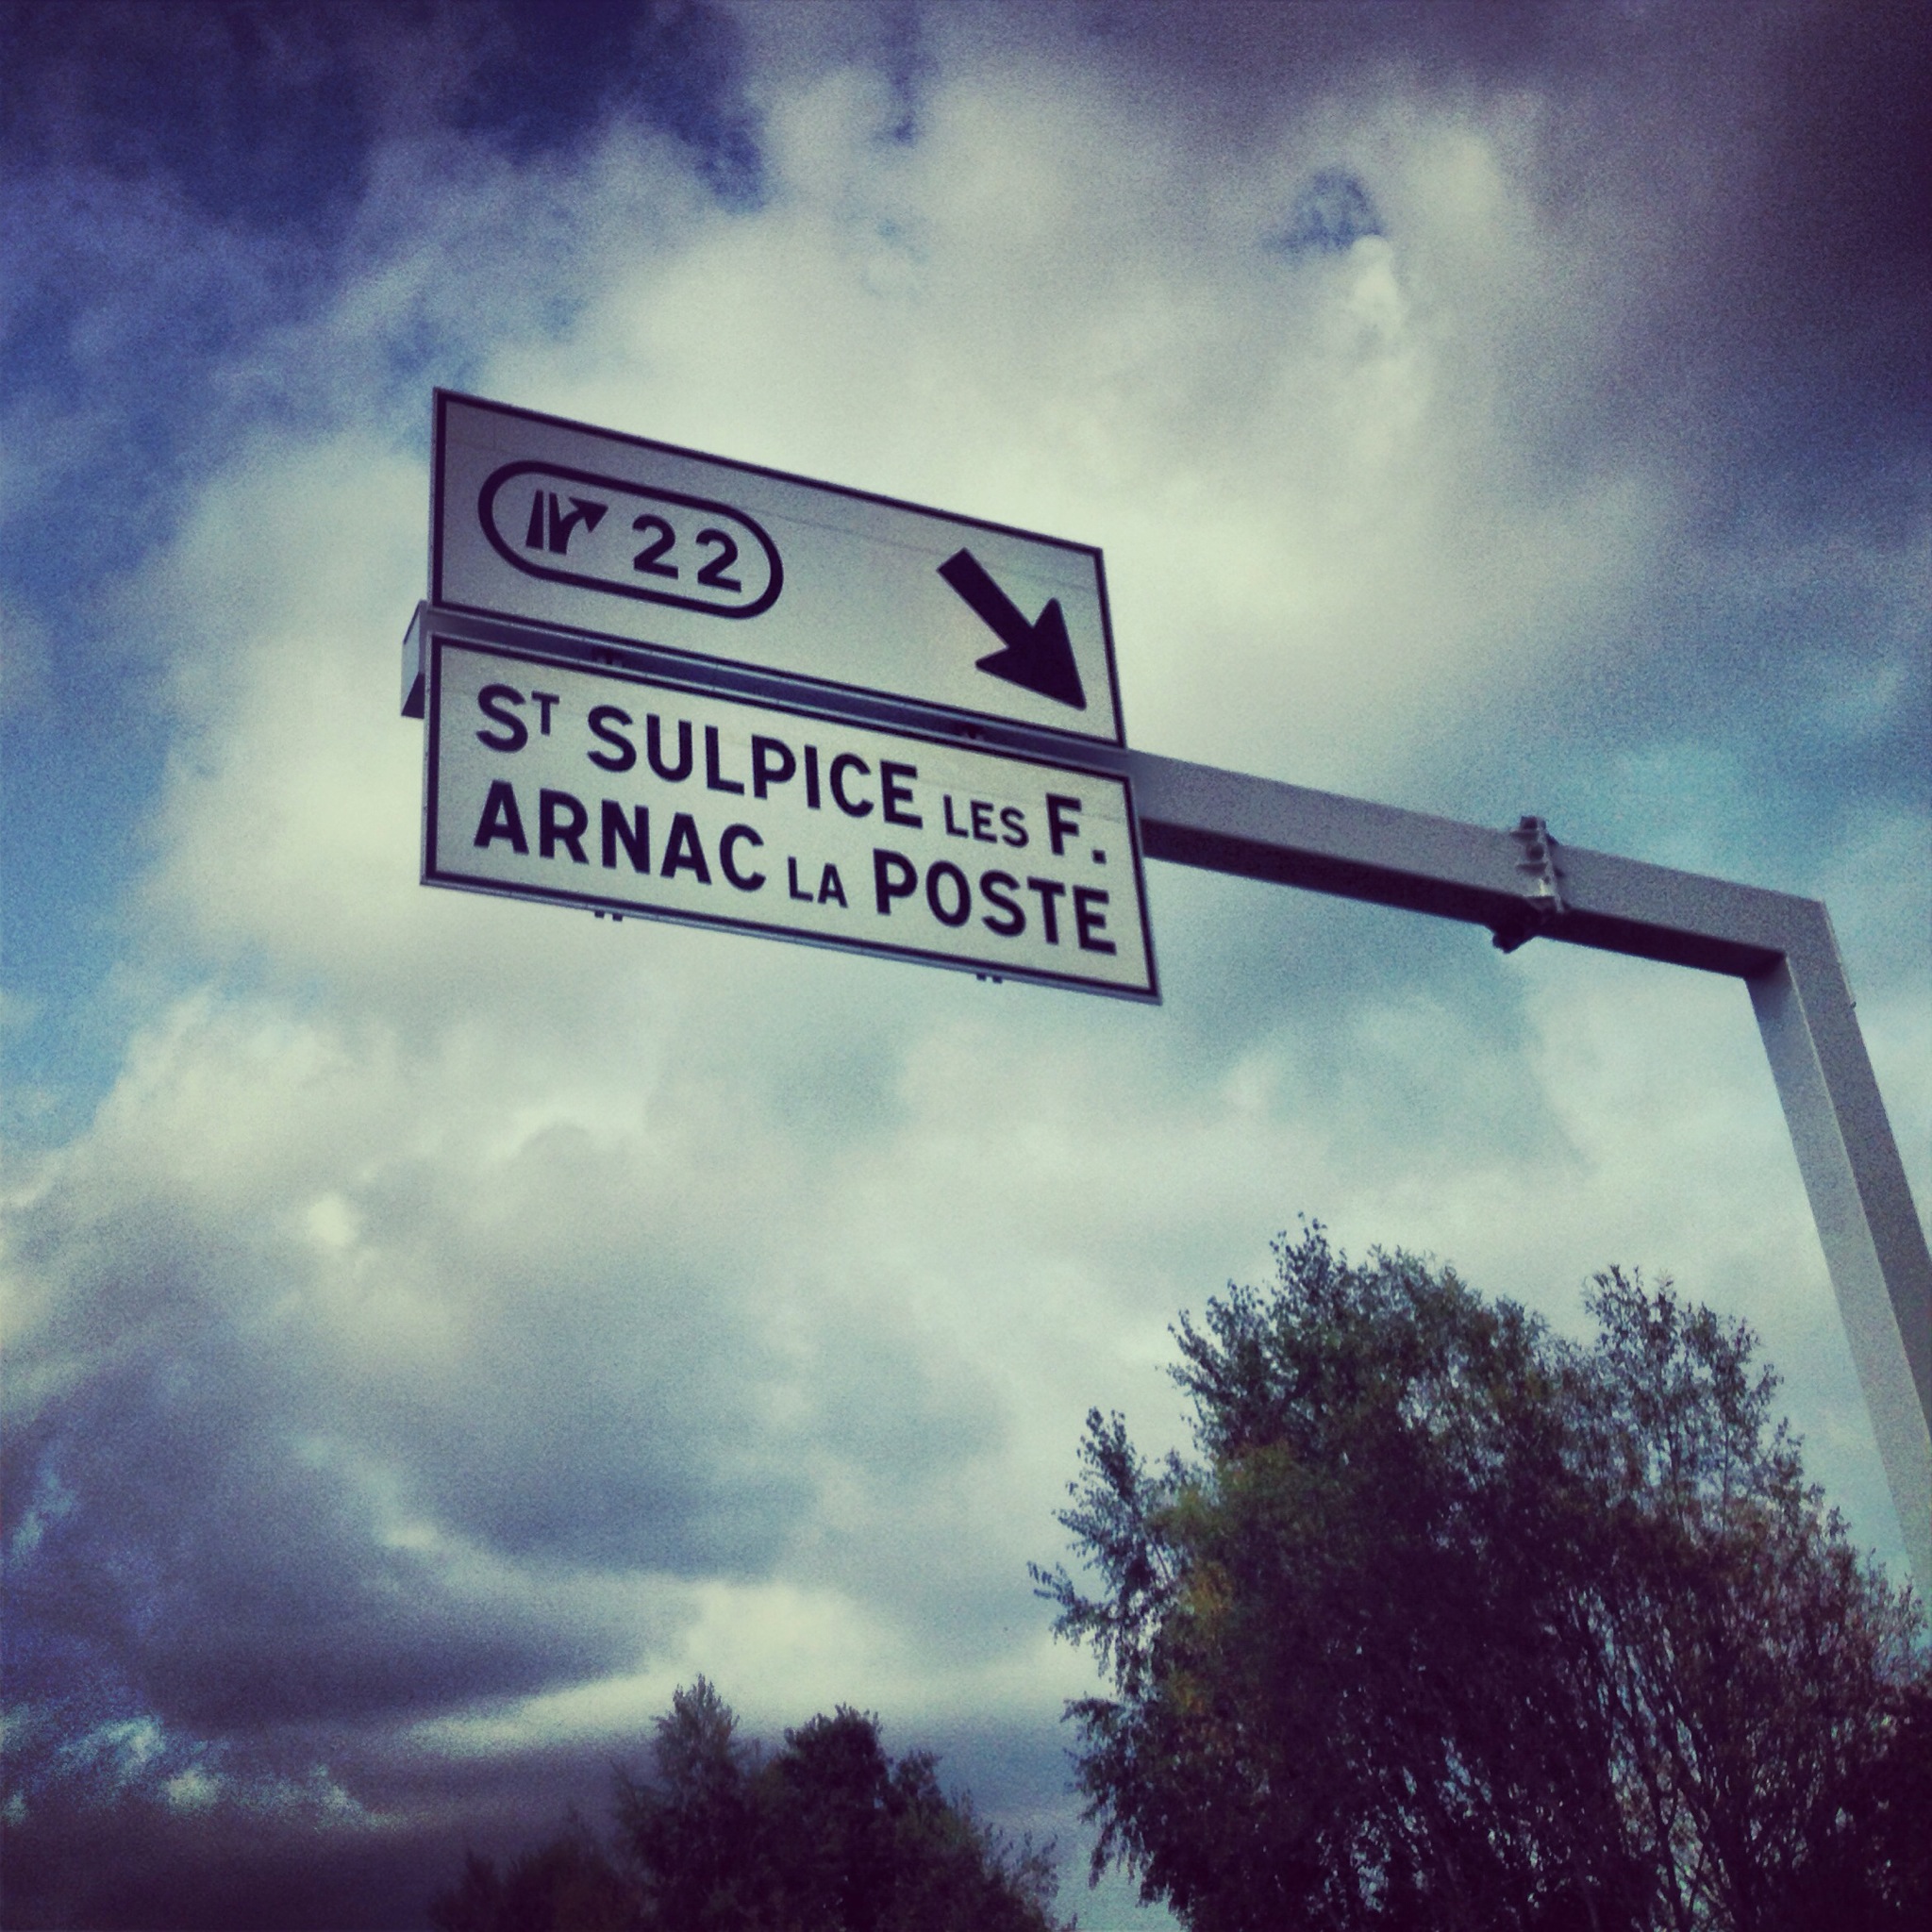 Le panneau d'Arnac la poste sur l'autoroute non loin de Limoges